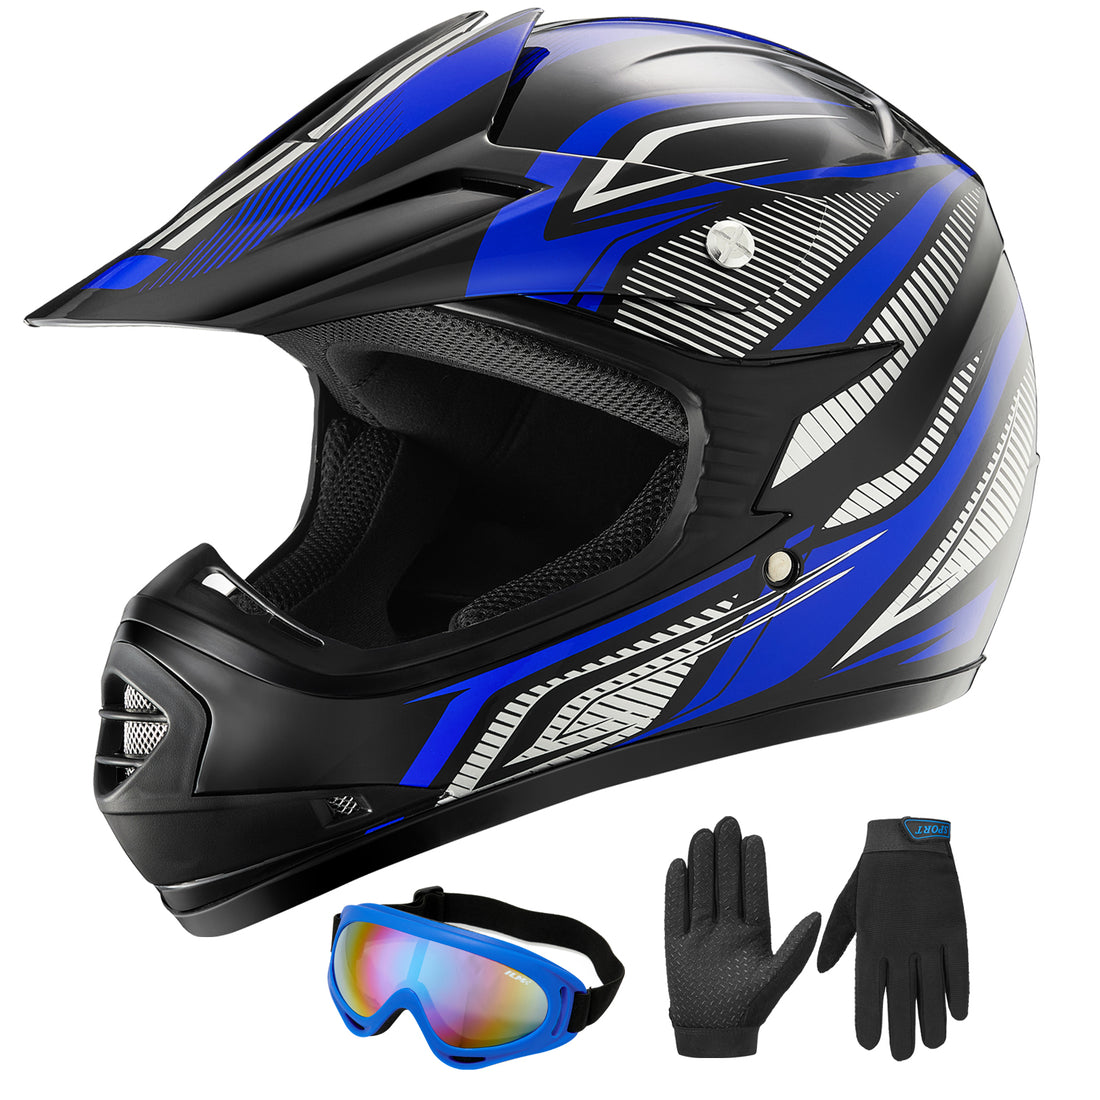 Implicaties Toepassing Vlek ILM Youth Kids ATV Motocross Helmet Goggles Sports Gloves Dirt Bike Mo